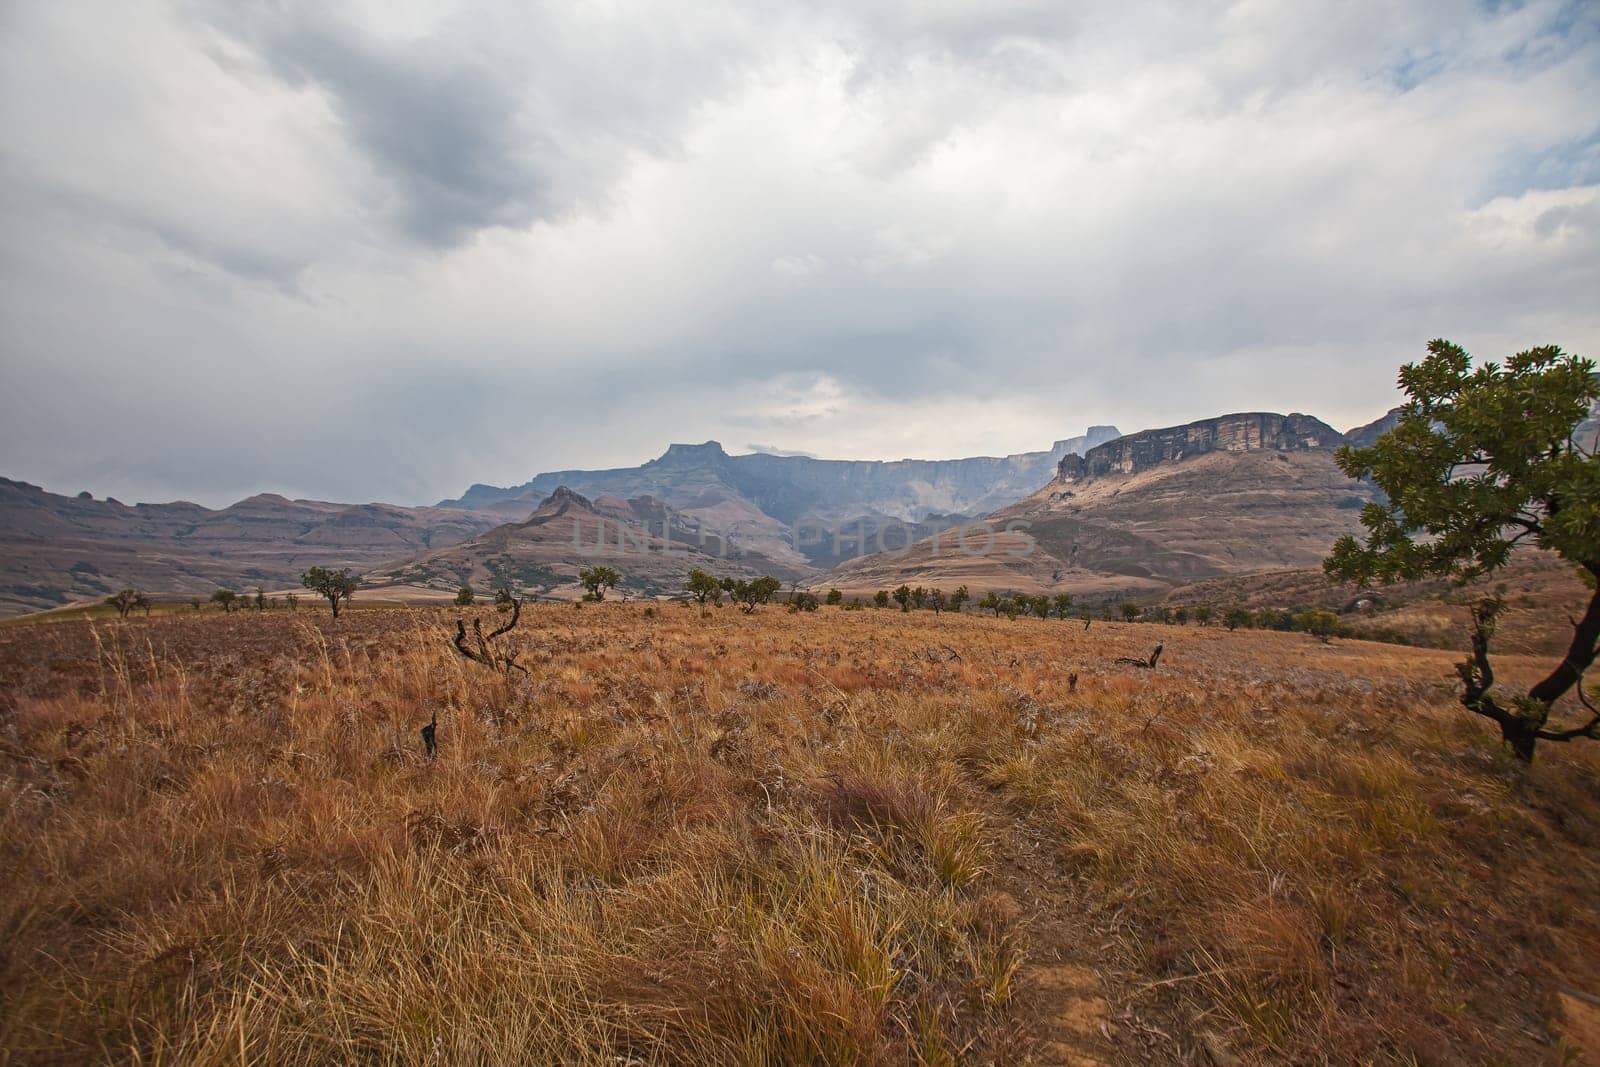 Drakensberg Mountain scene 15563 by kobus_peche